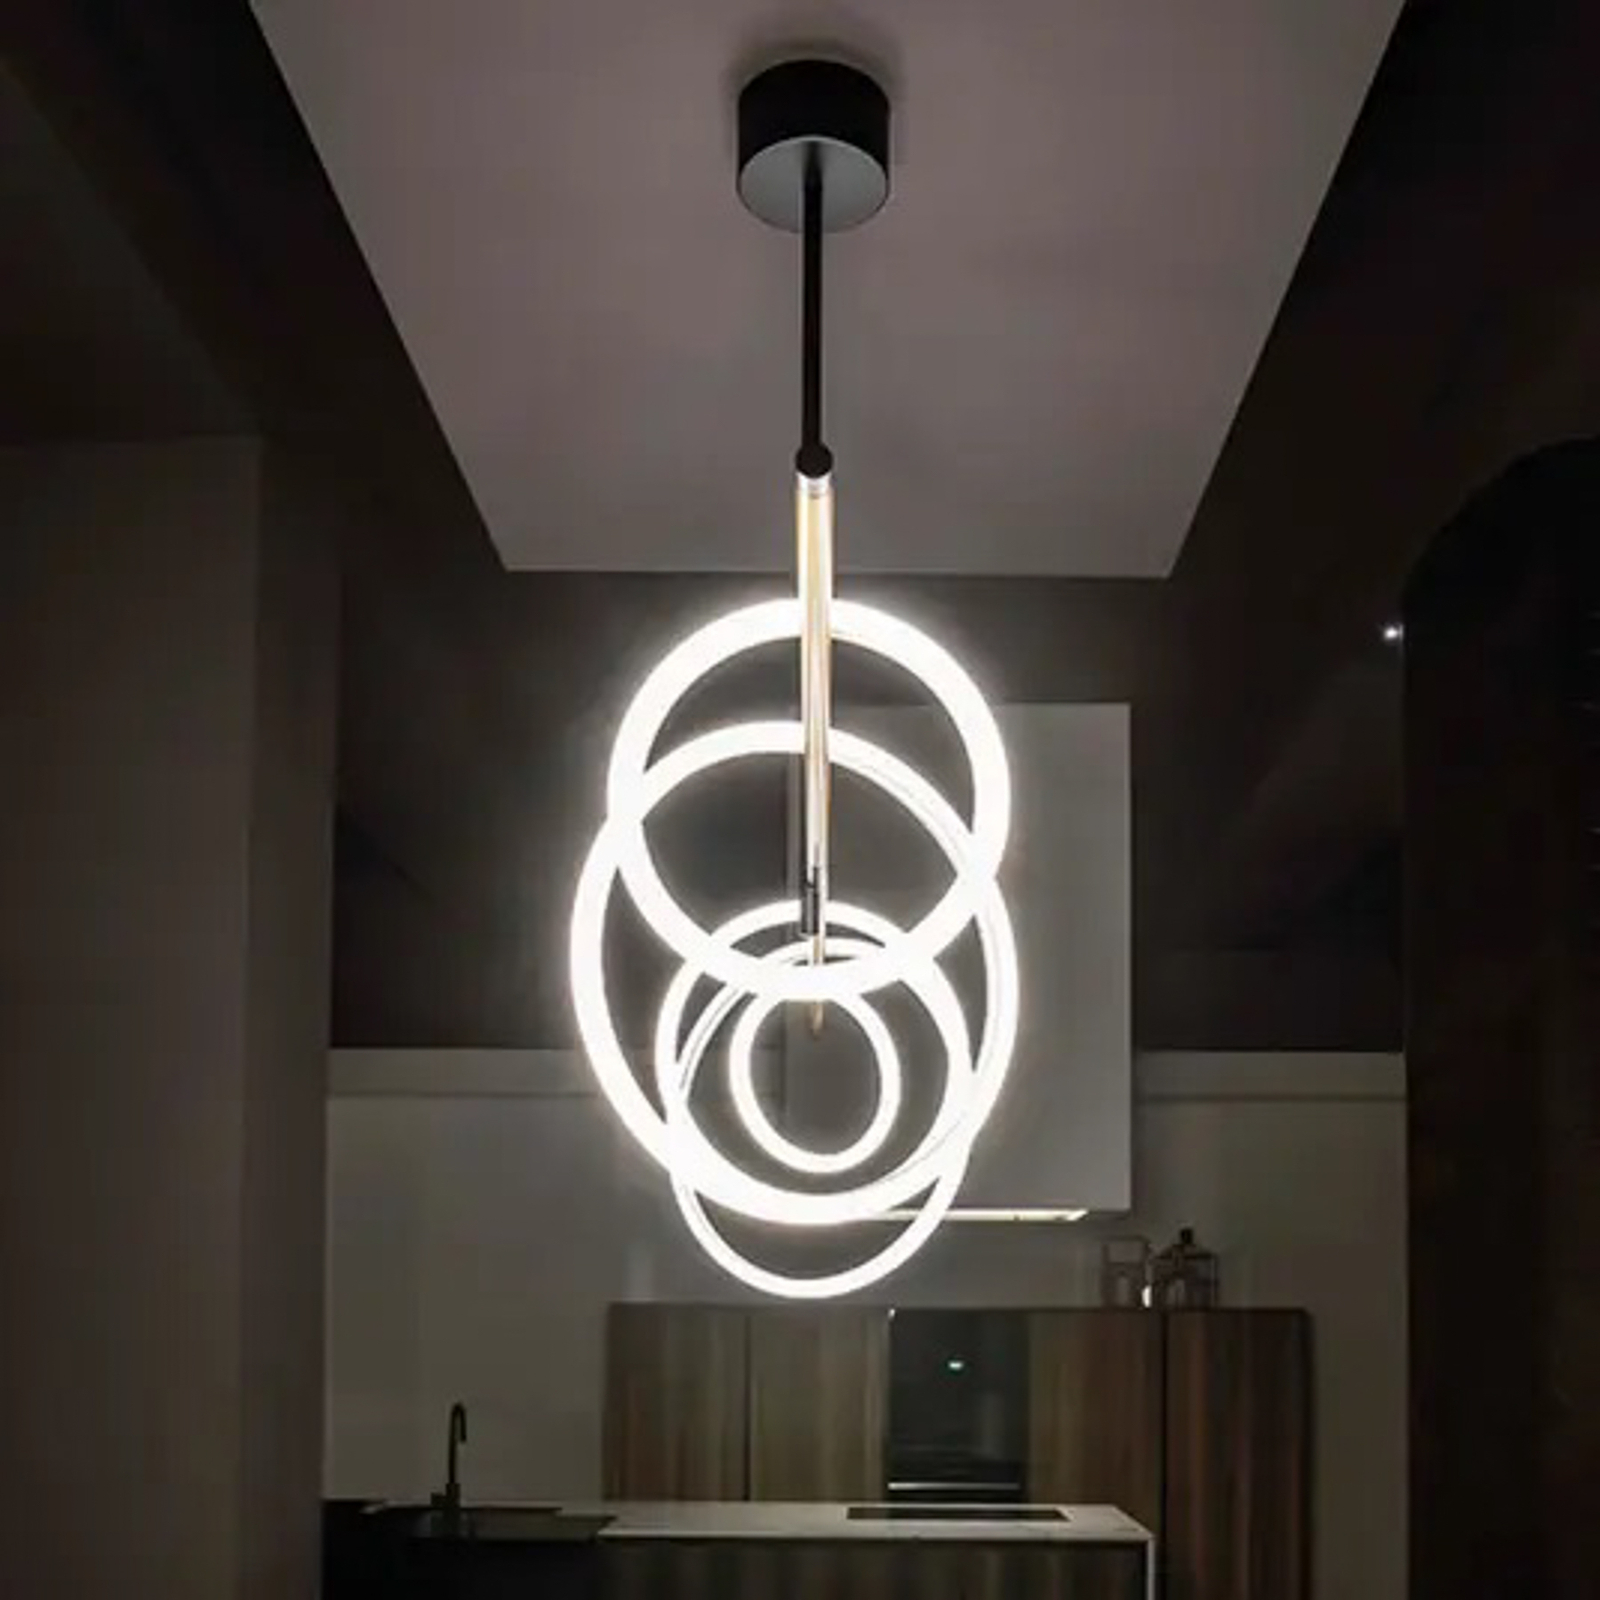 Lampa wisząca LED Ulaop, pięć pierścieni, biała